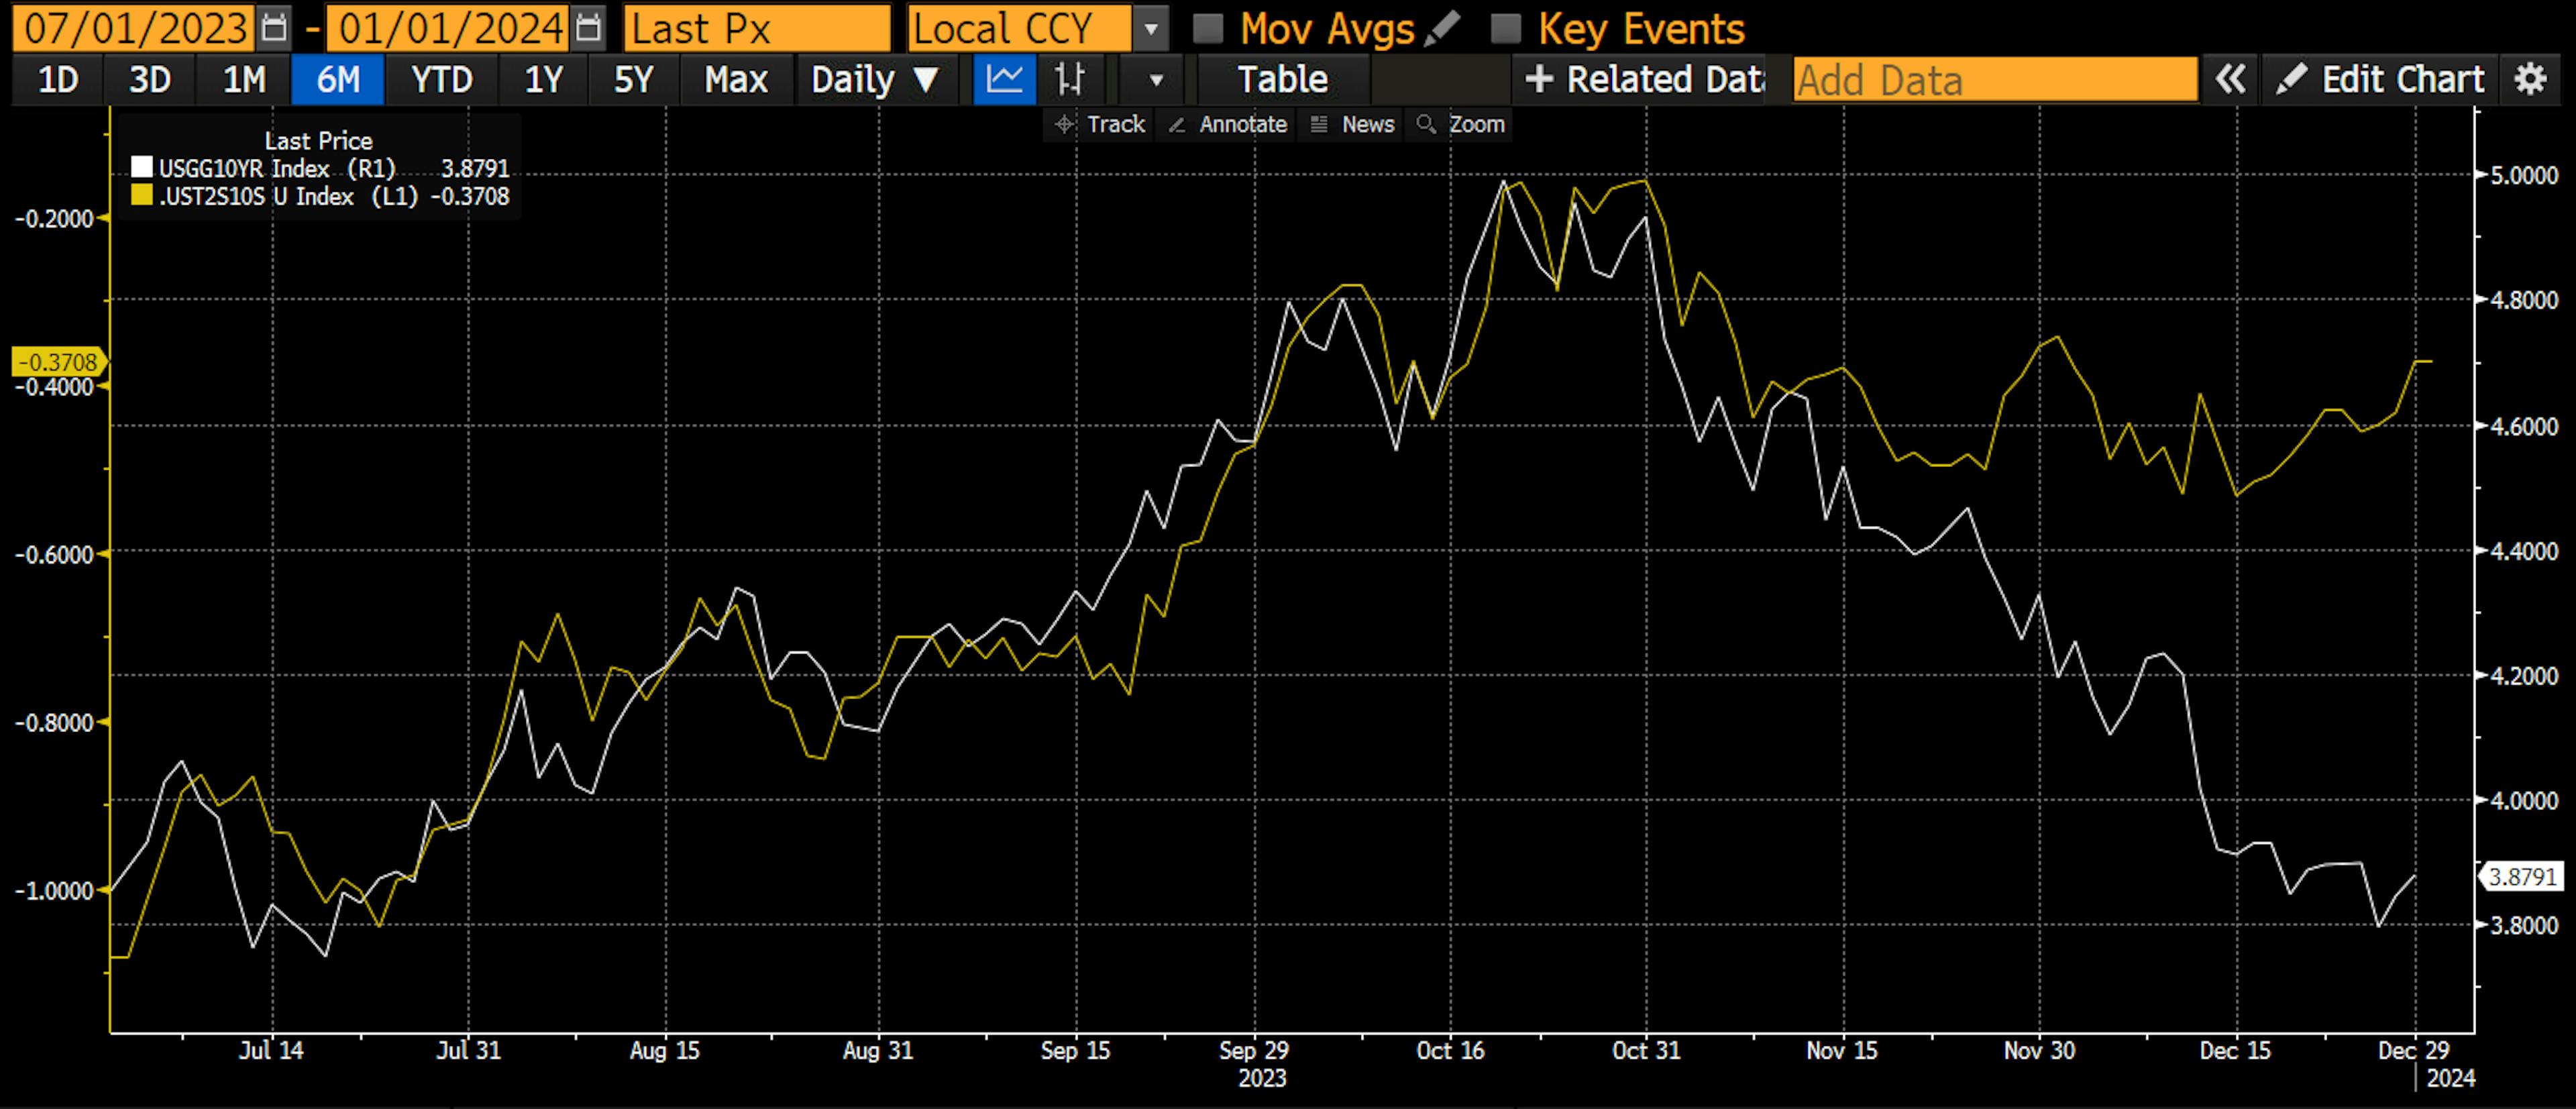 白い線は10年国債、黄色の線は10年国債と2年国債の利回りの差です。ご覧のとおり、利回りは弱気派の傾向で 10 月末にピークに達しました。これは、白と黄色の線が並行して上昇したことを意味します。 11月初めに悪質な債券ショートスクイーズが始まり、利回りは急落した。